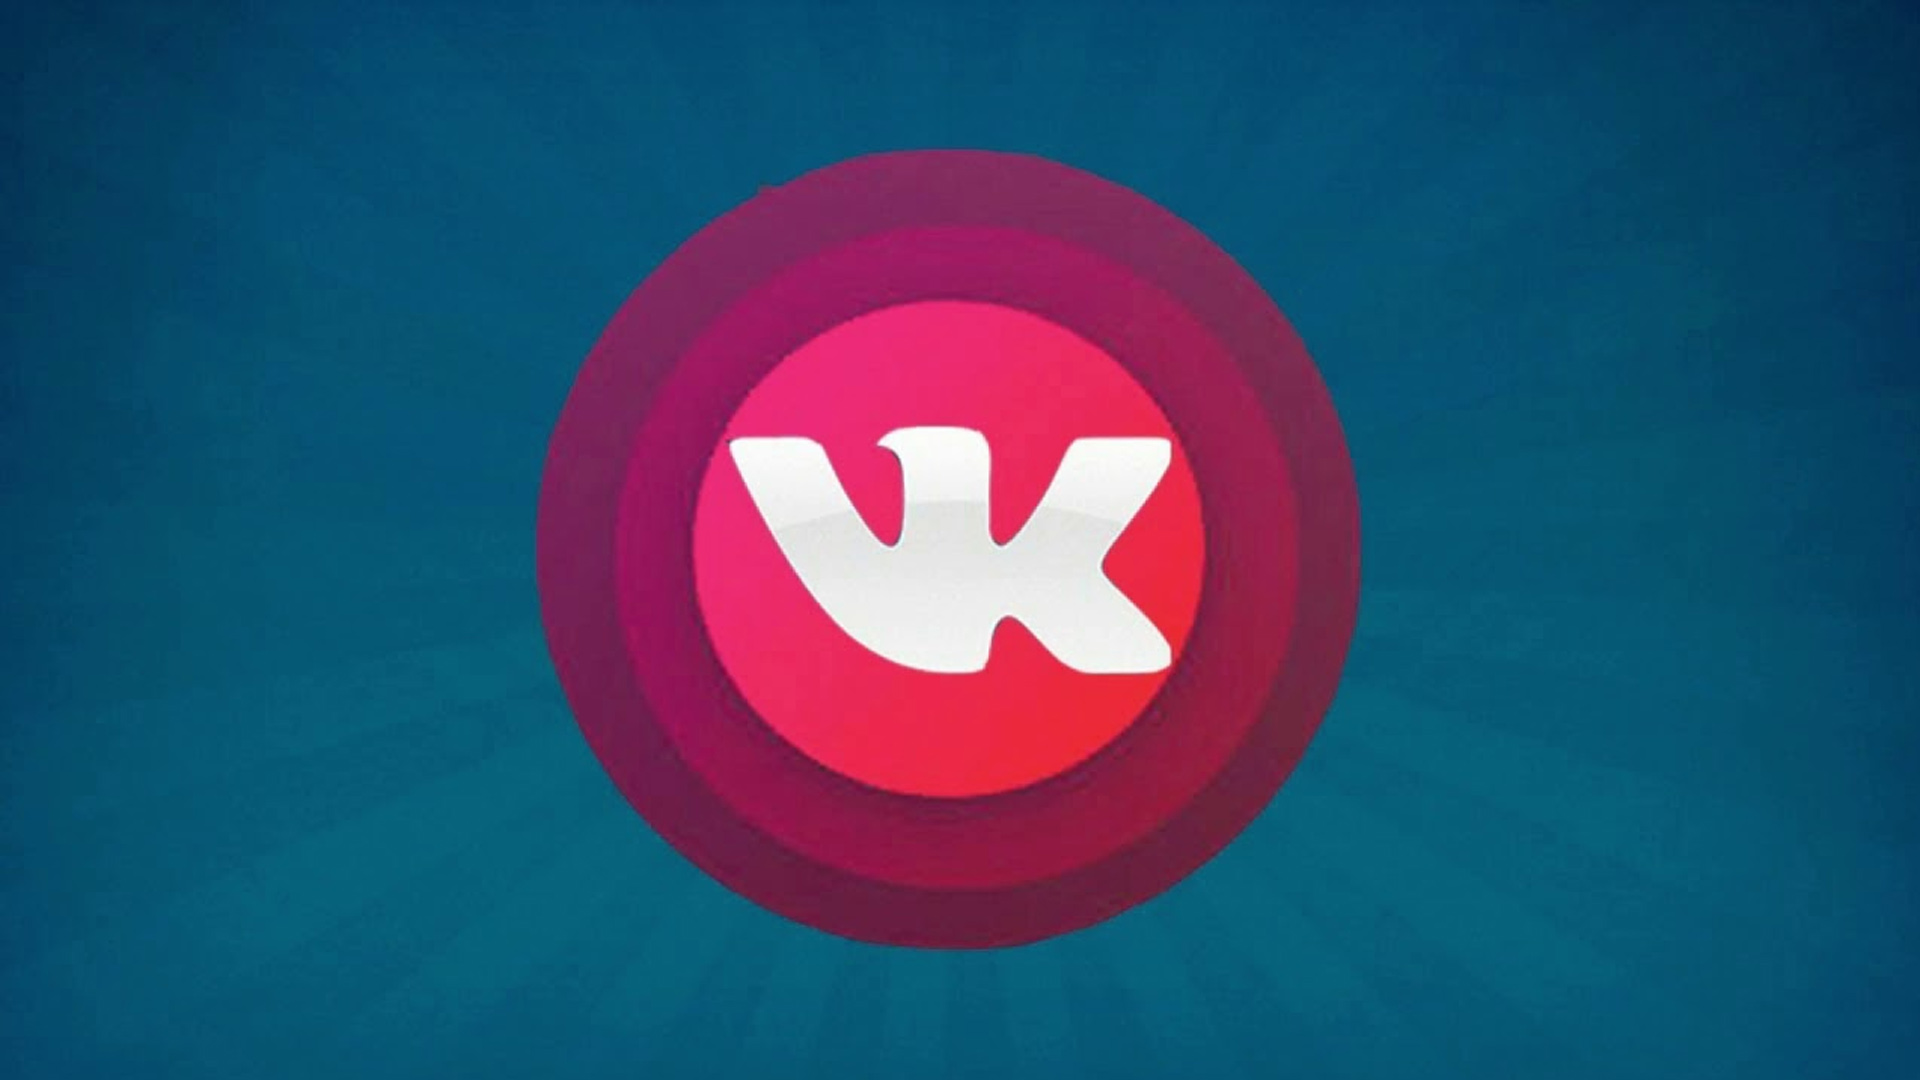 M vk live. Прямой эфир ВК. Прямая трансляция ВК. Значок ВК лайв. Прямой эфир ВК логотип.